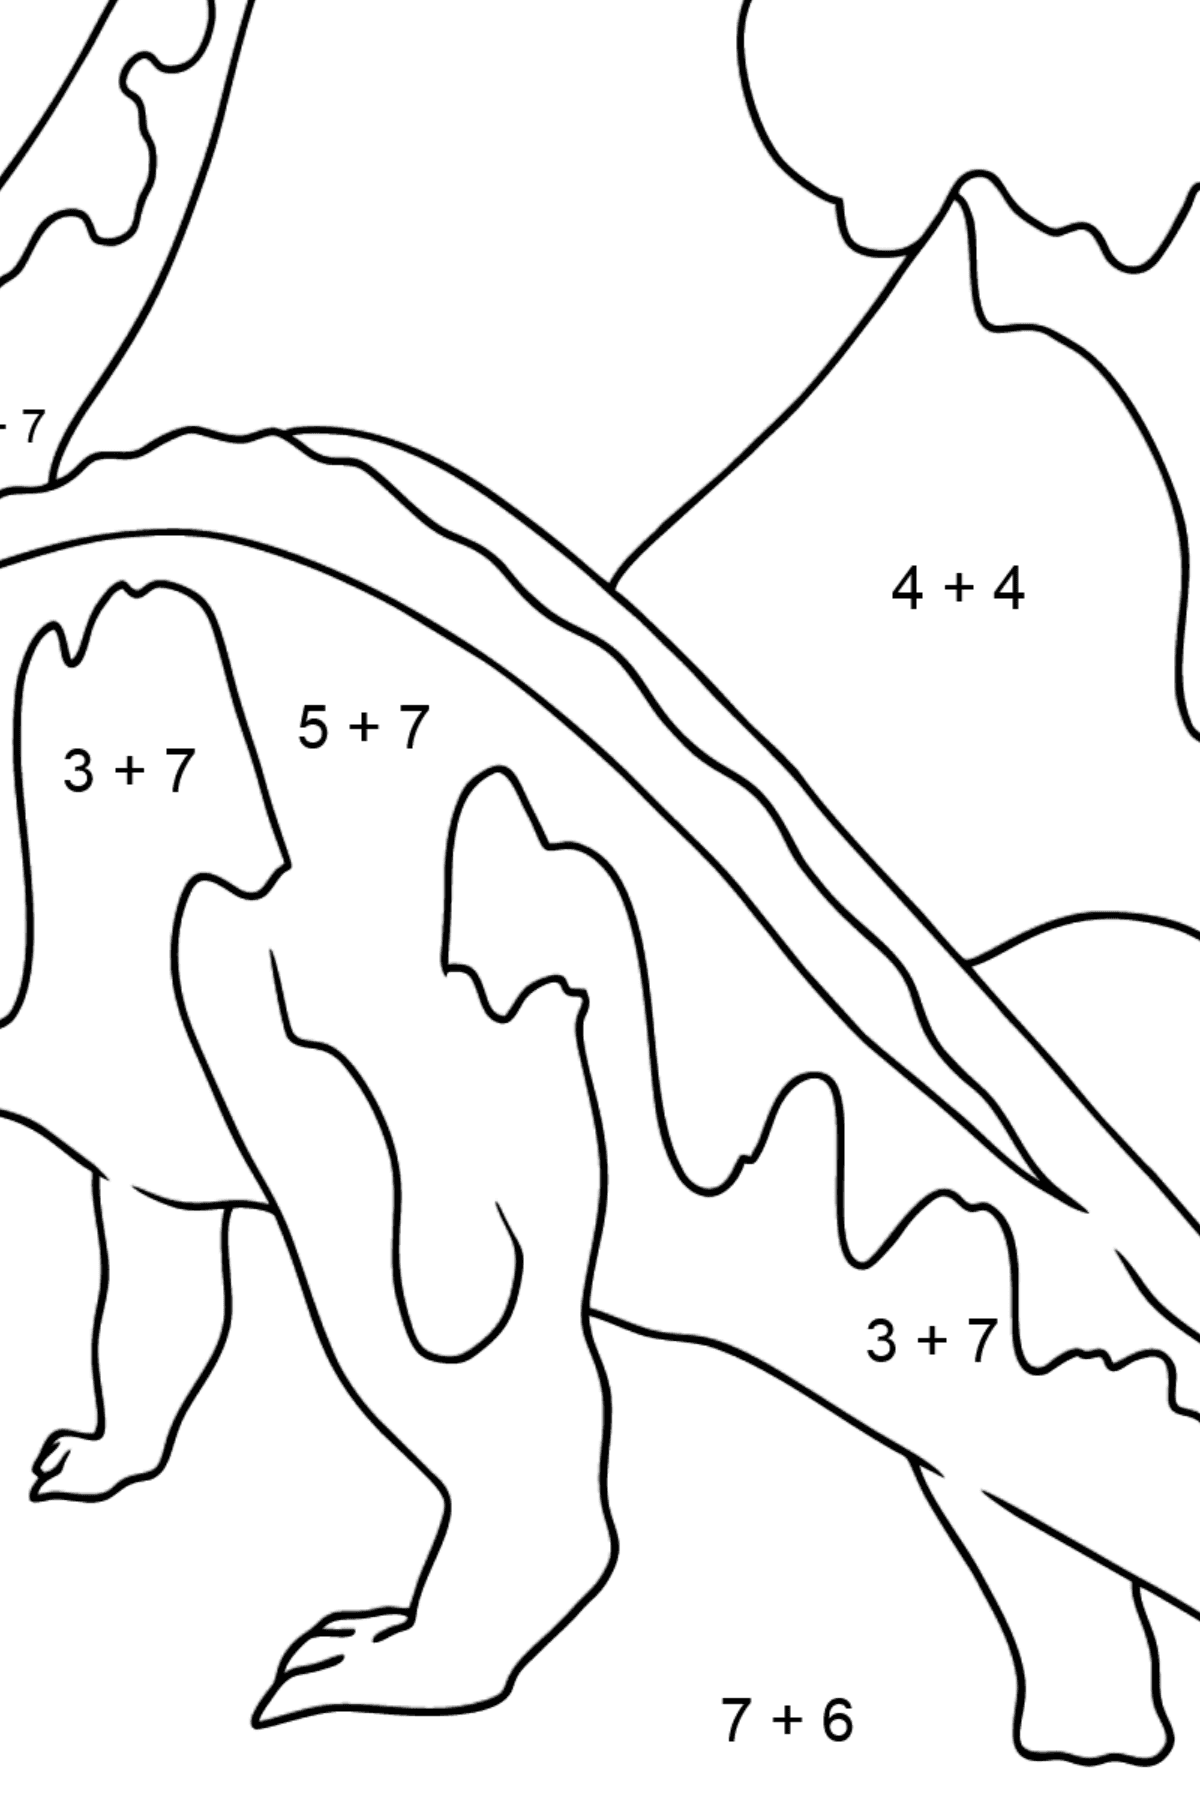 Tegning til fargelegging brontosaurus (enkelt) - Matematisk fargeleggingsside - addisjon for barn